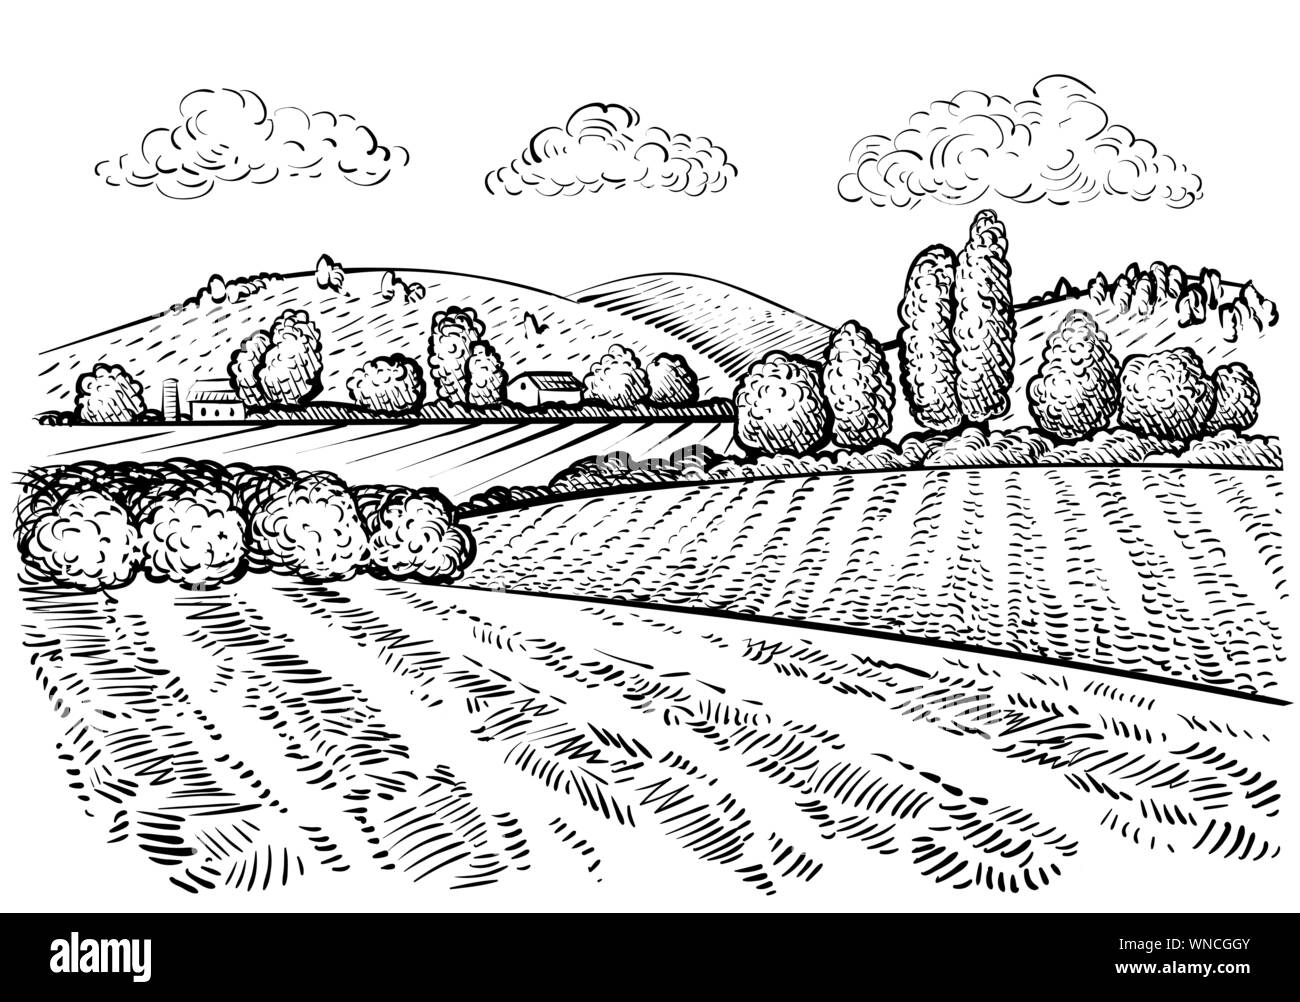 Ländliche Landschaft, handdrawn inked Skizze stil Abbildung. Hand zeichnen Abbildung: Outdoor natürliche malerische. Landwirtschaftlichen Hof und Feld. Vektor monochrom Übersicht Bild Stock Vektor